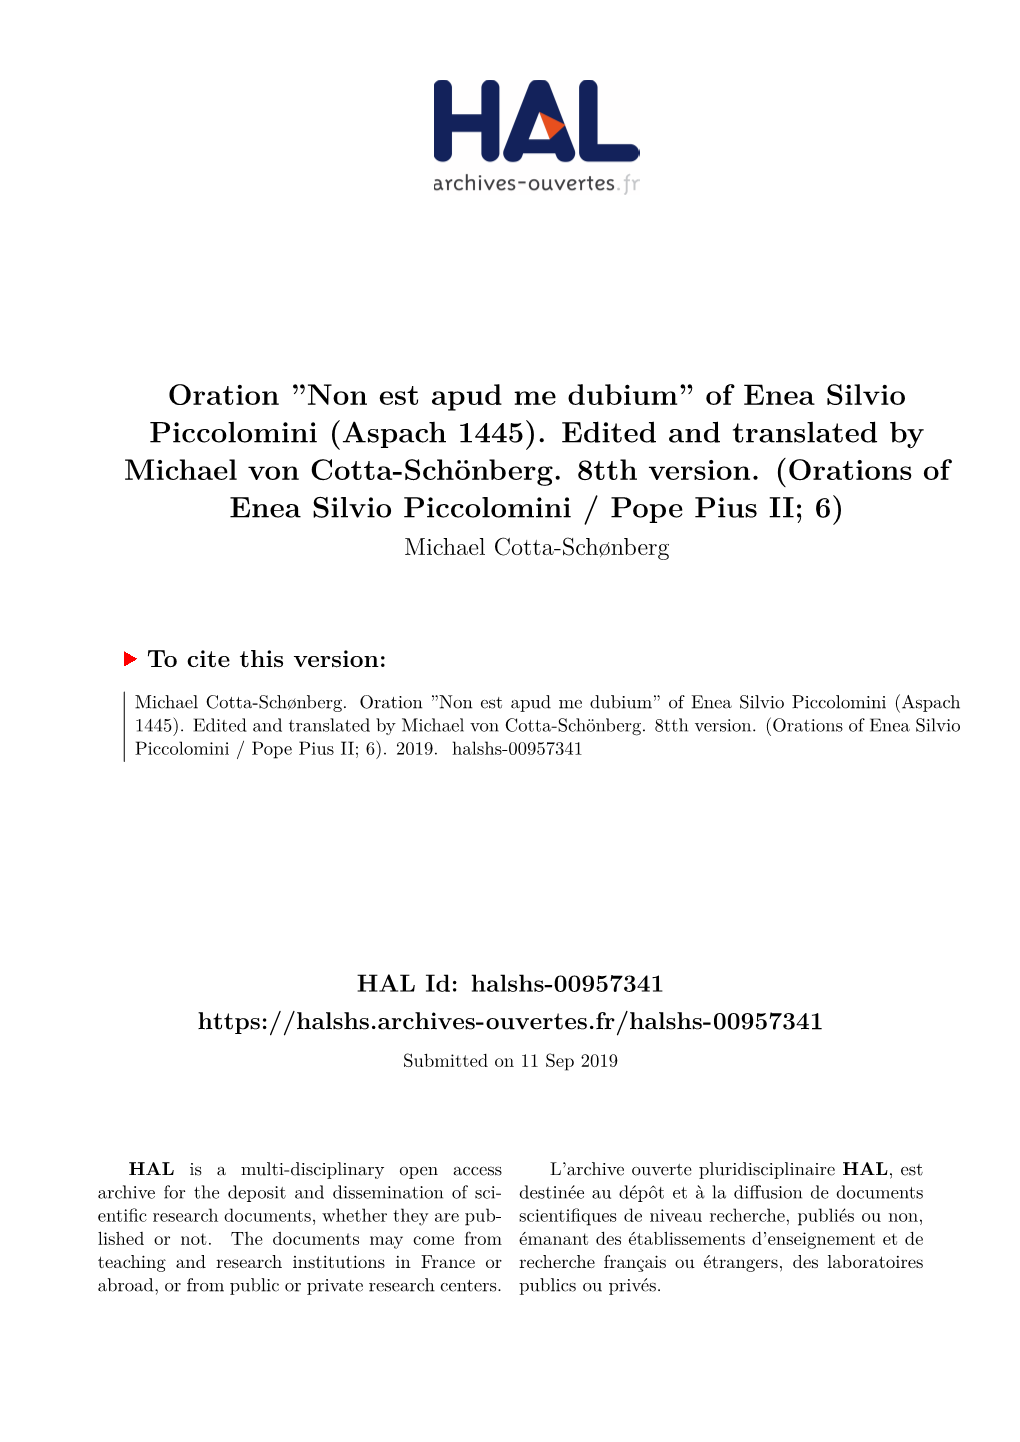 Of Enea Silvio Piccolomini (Aspach 1445). Edited and Translated by Michael Von Cotta-Schönberg